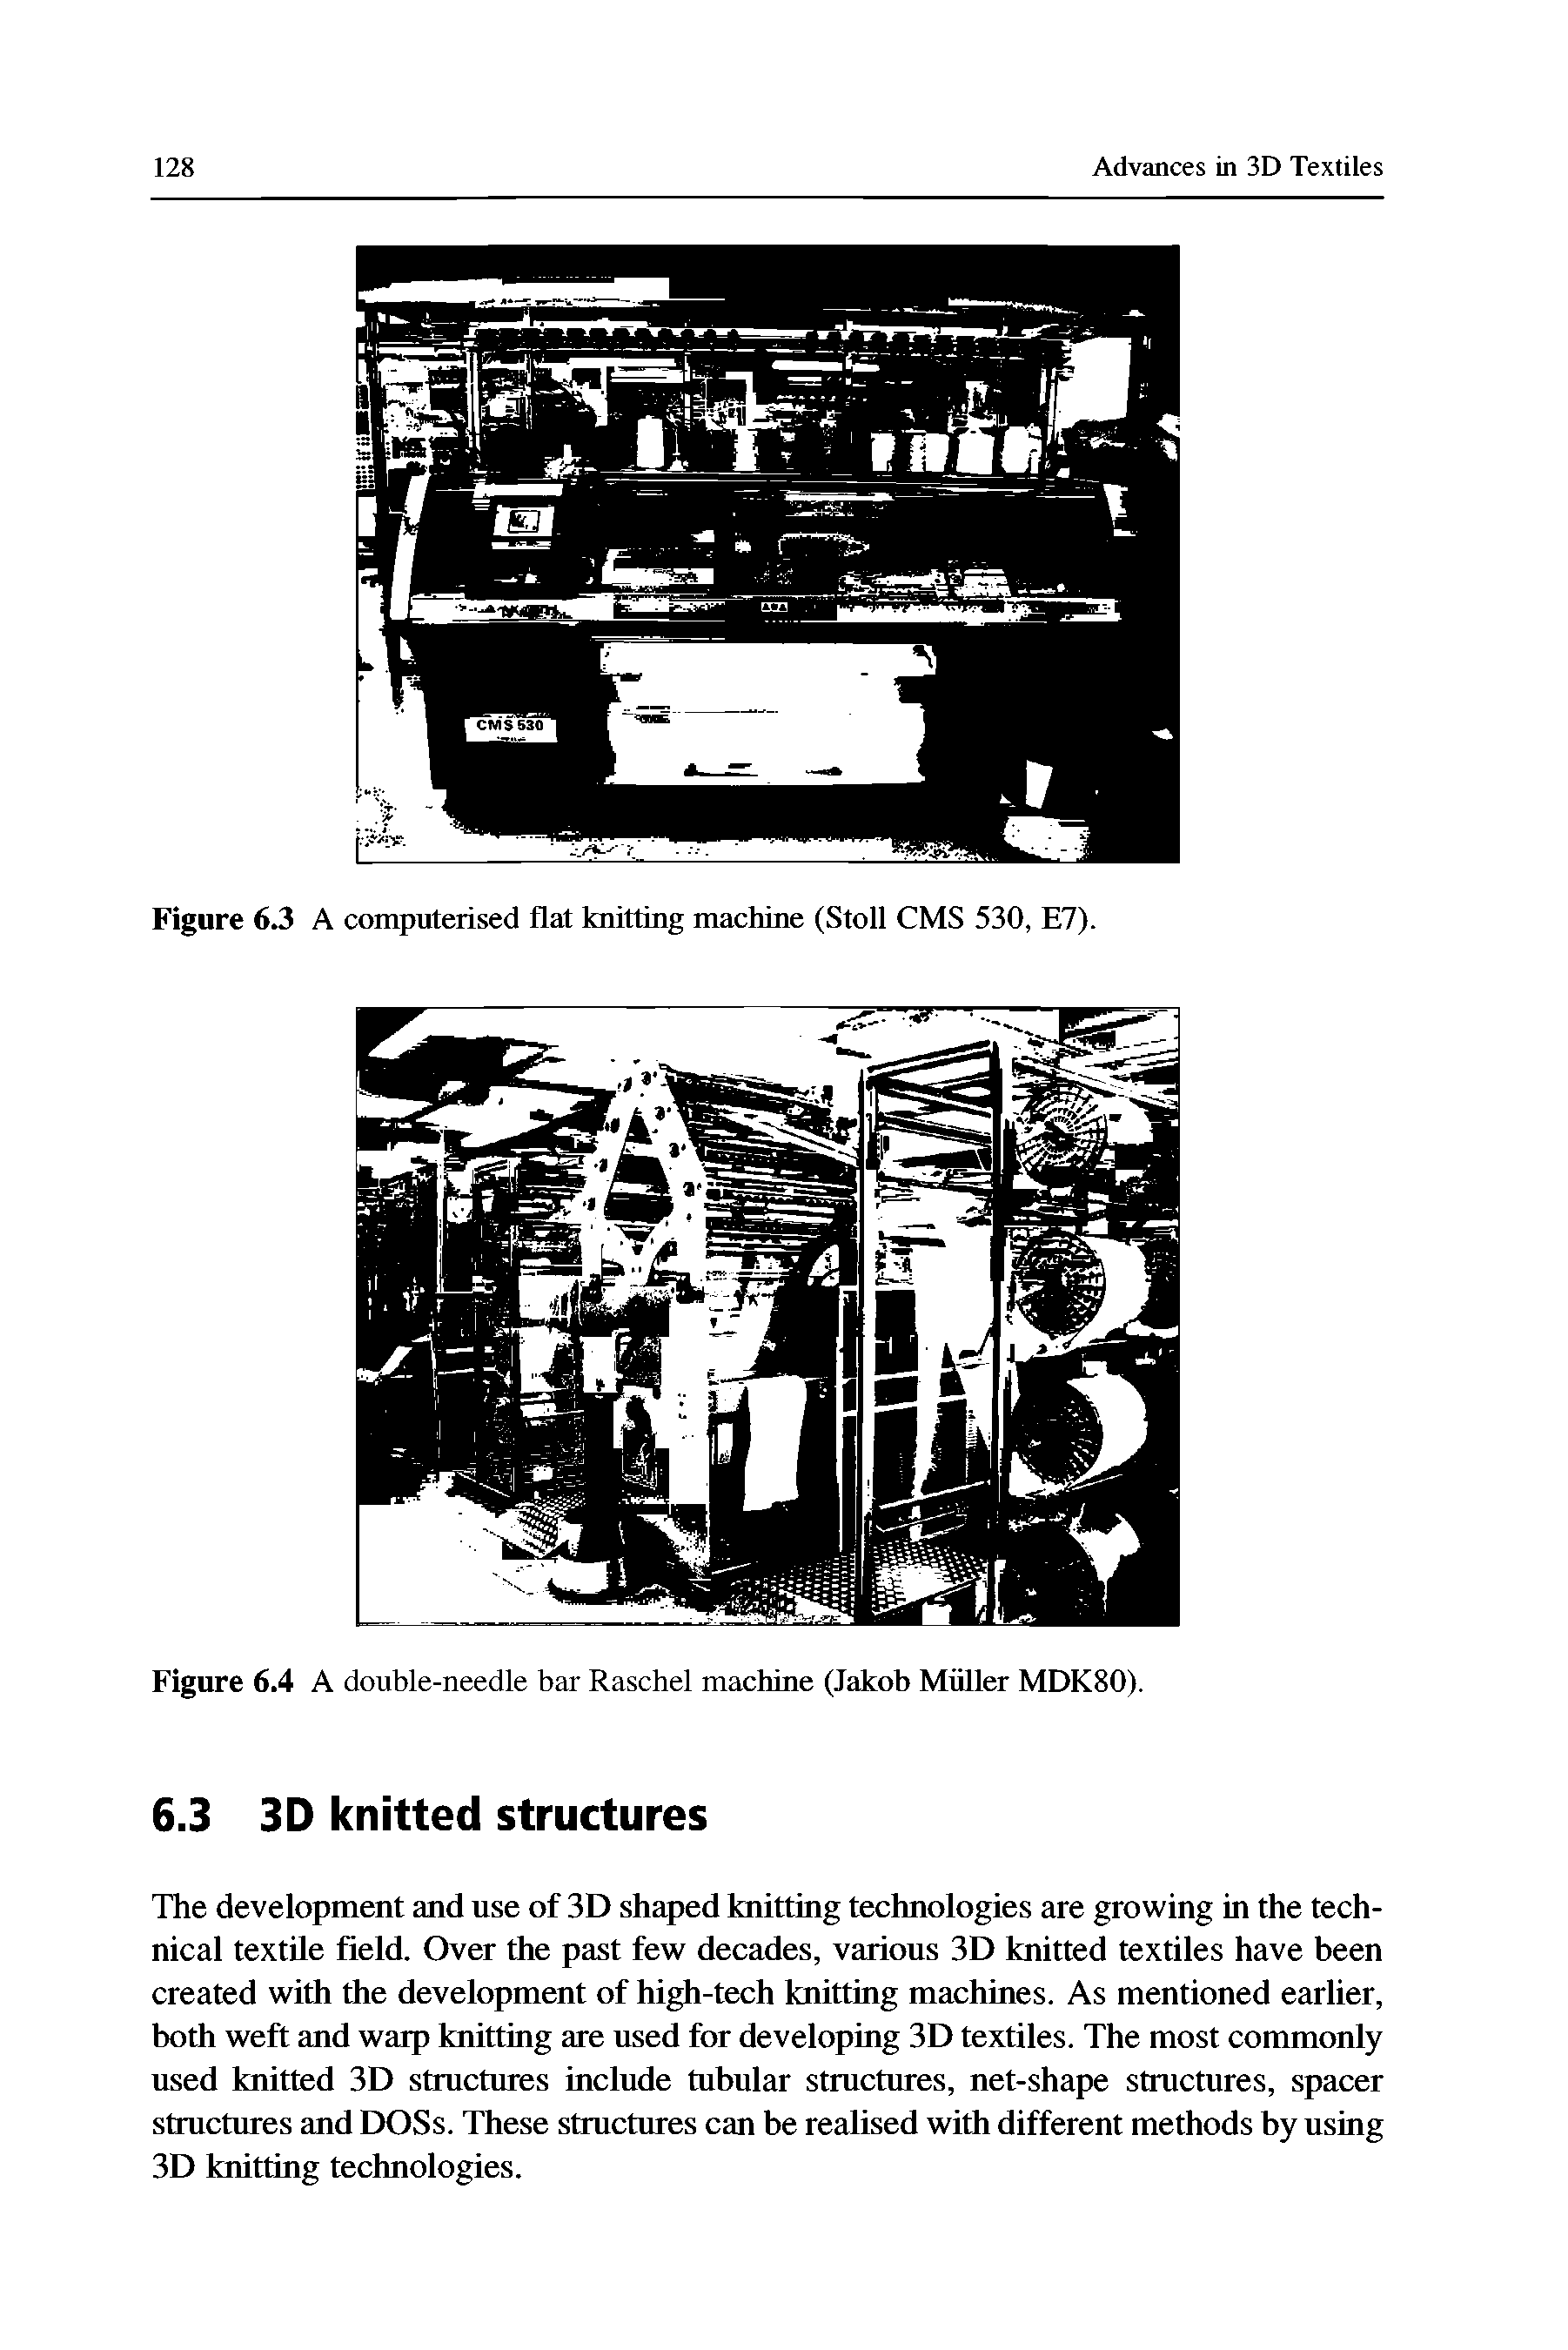 Figure 6.3 A computerised flat knitting machine (Stoll CMS 530, E7).